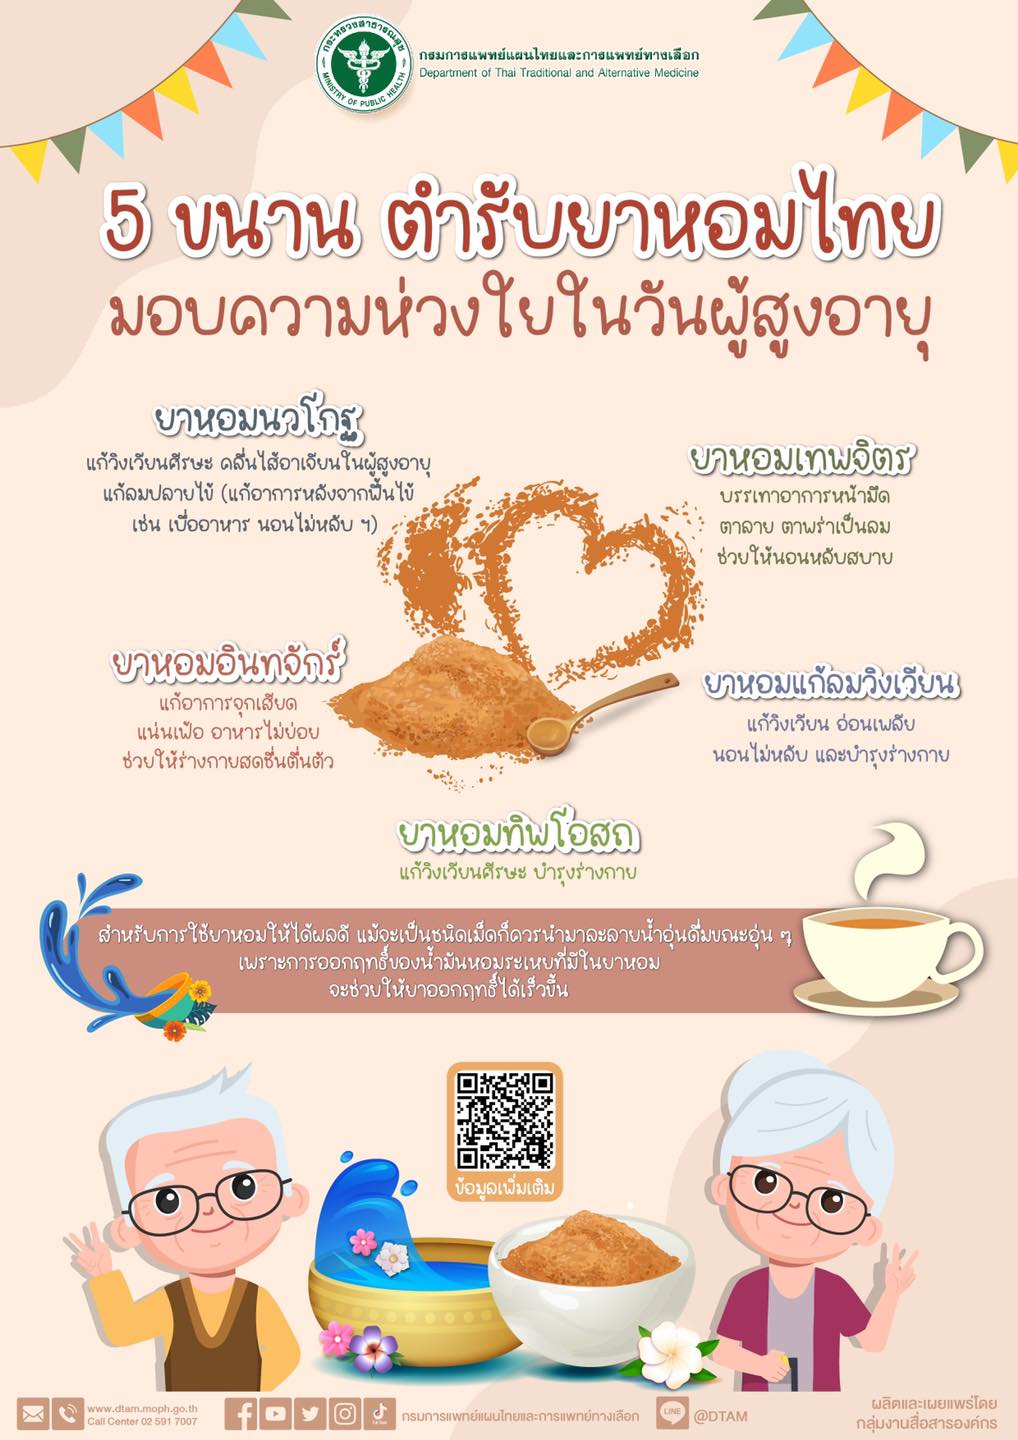 5 ตำรับยาหอมไทย เหมาะสำหรับอาการยอดฮิตและใช้ดูแลผู้สูงอายุ